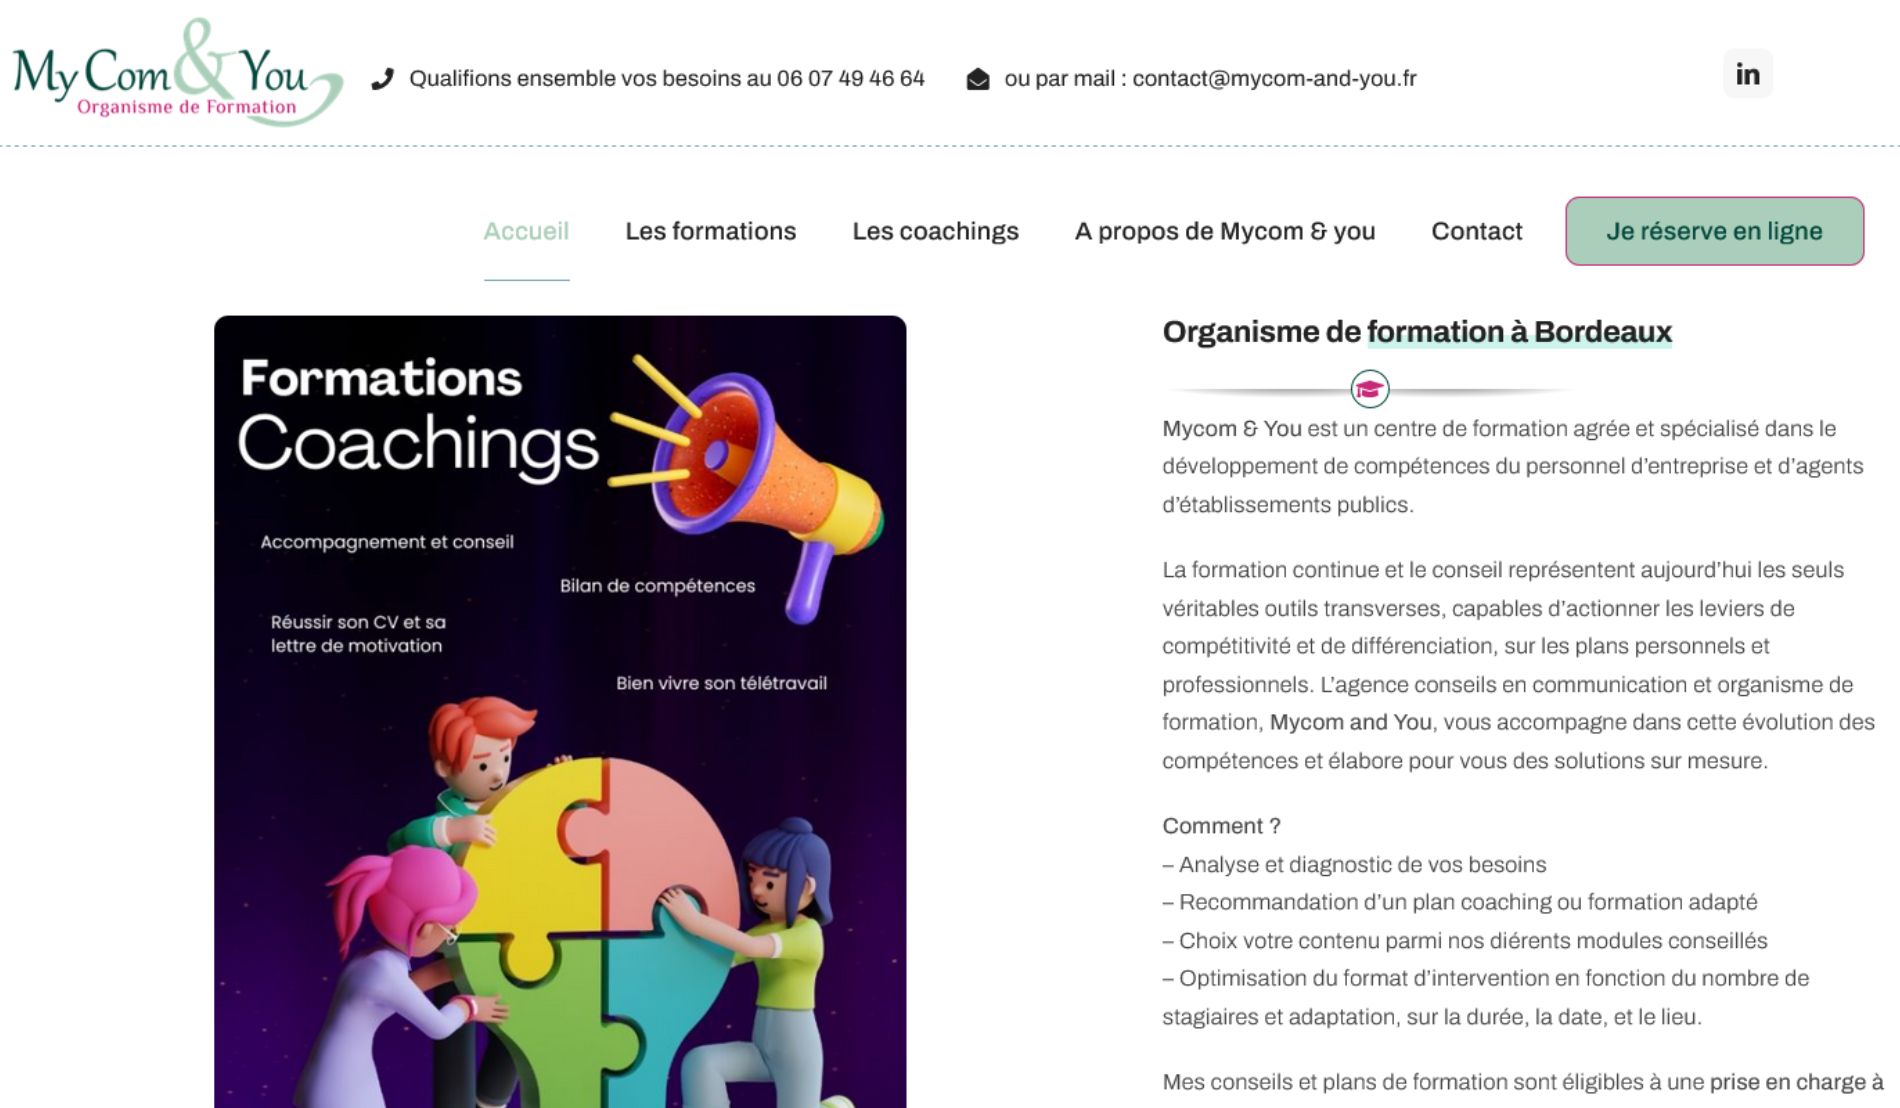 Mycom & You - Organisme de formation à Bordeaux